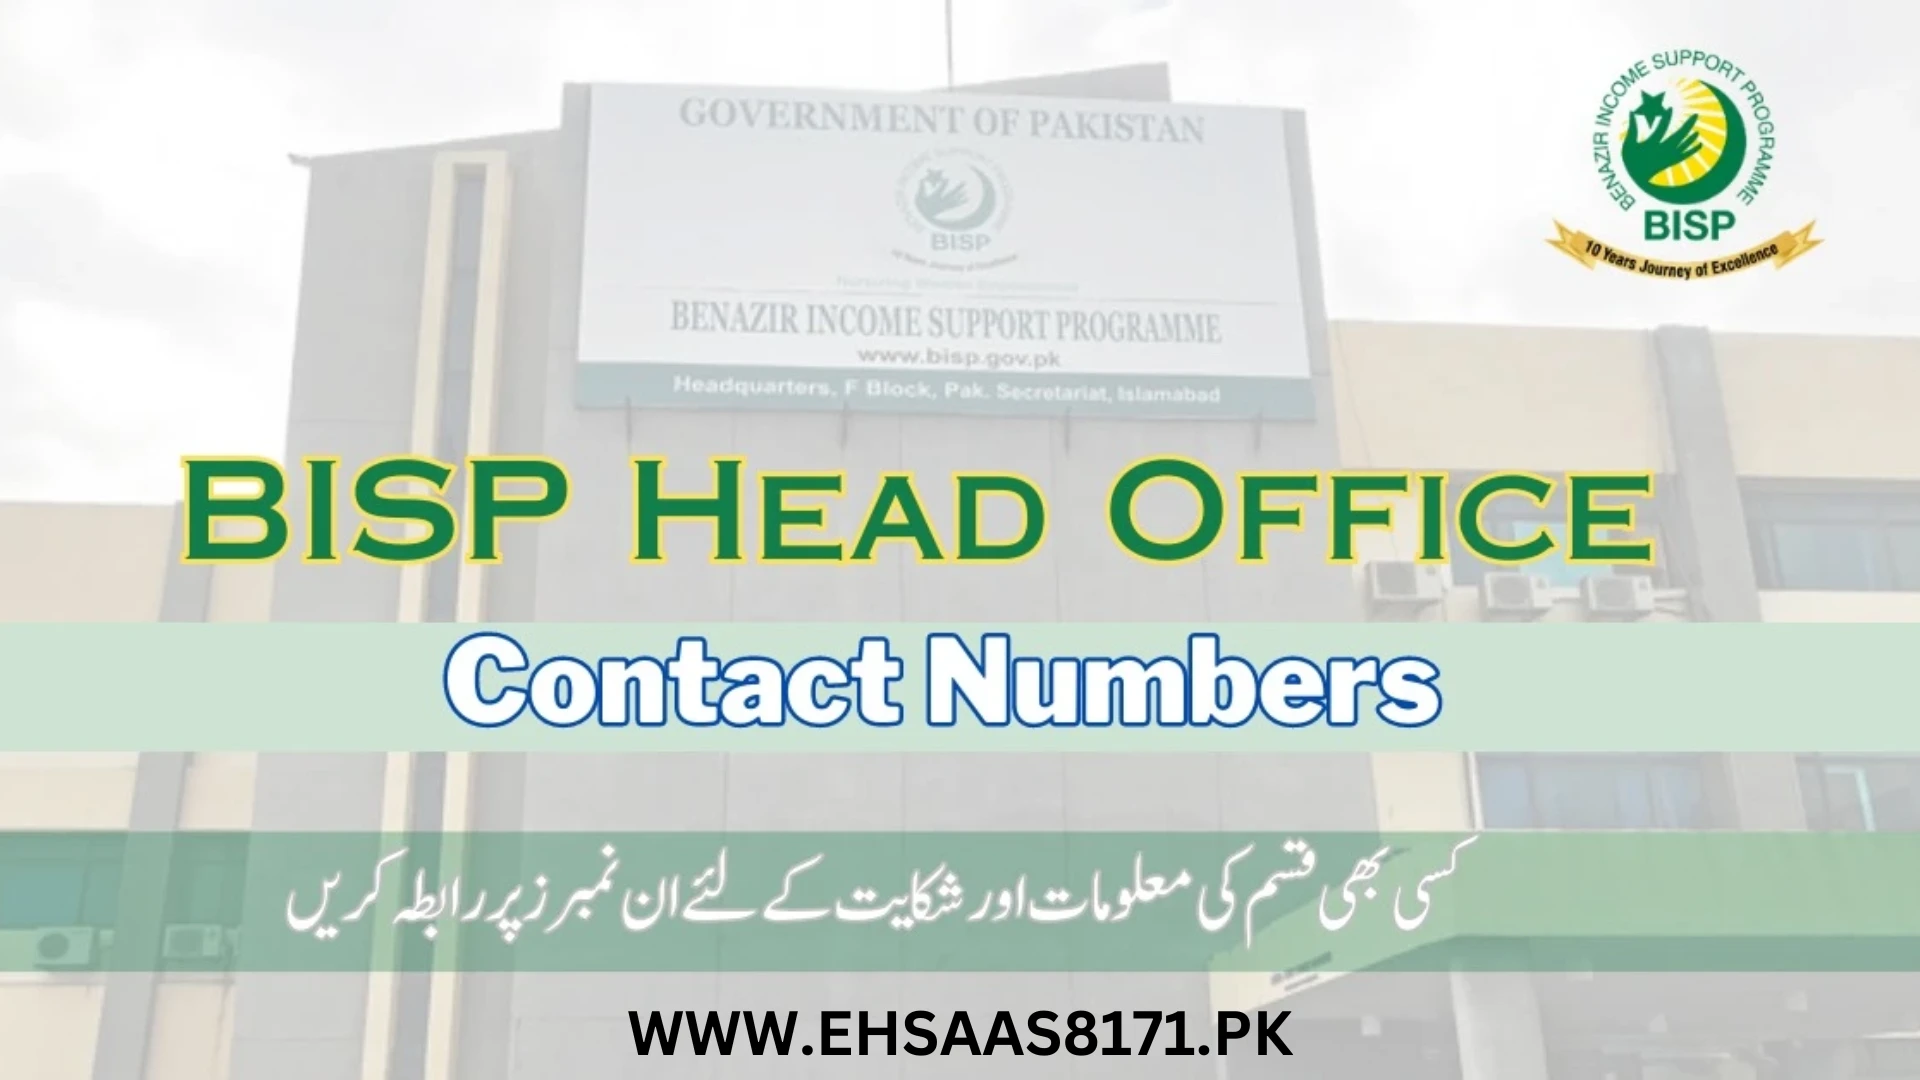 BISP Headquarter In Islamabad